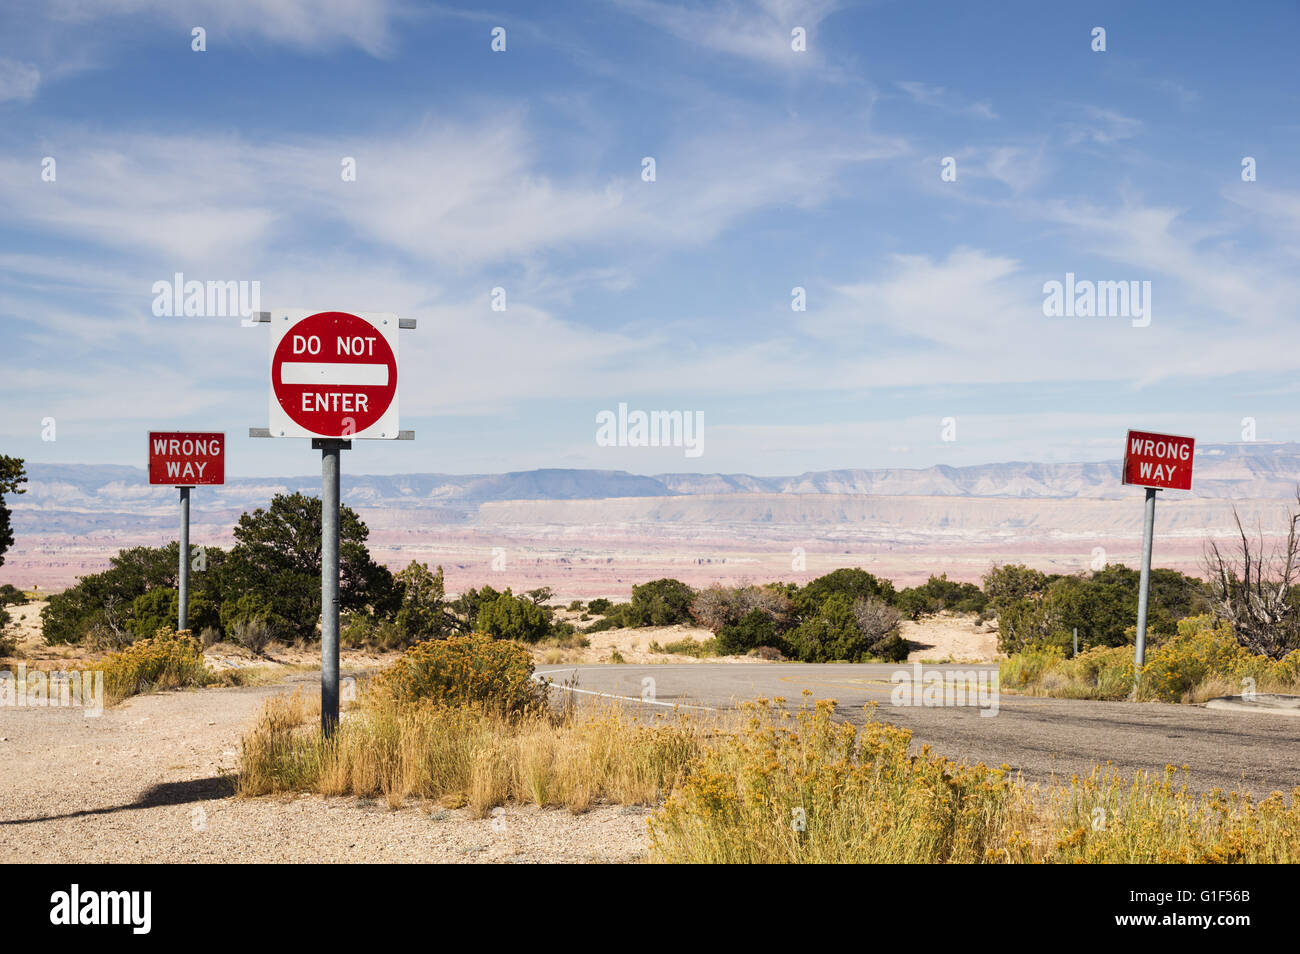 Camino equivocado y no introduzca señales a lo largo de una carretera en el desierto del Suroeste Foto de stock